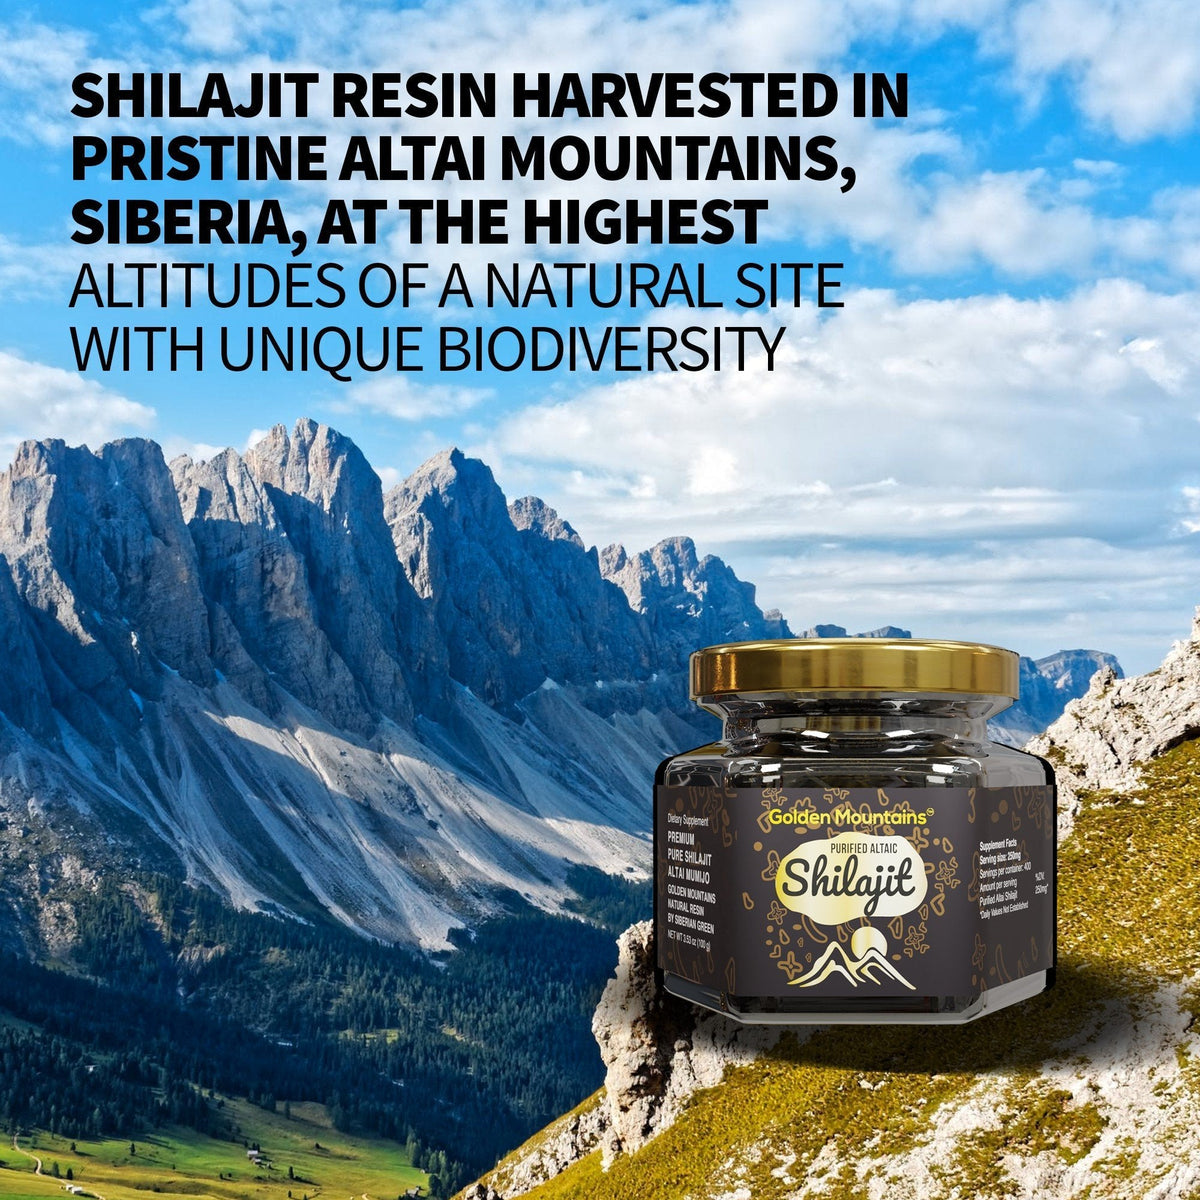 Golden Mountains Shilajit Resina Premium Pura Autentica Siberiana Altai 100g - Cucchiaio dosatore - Esclusivo Certificato di Qualità